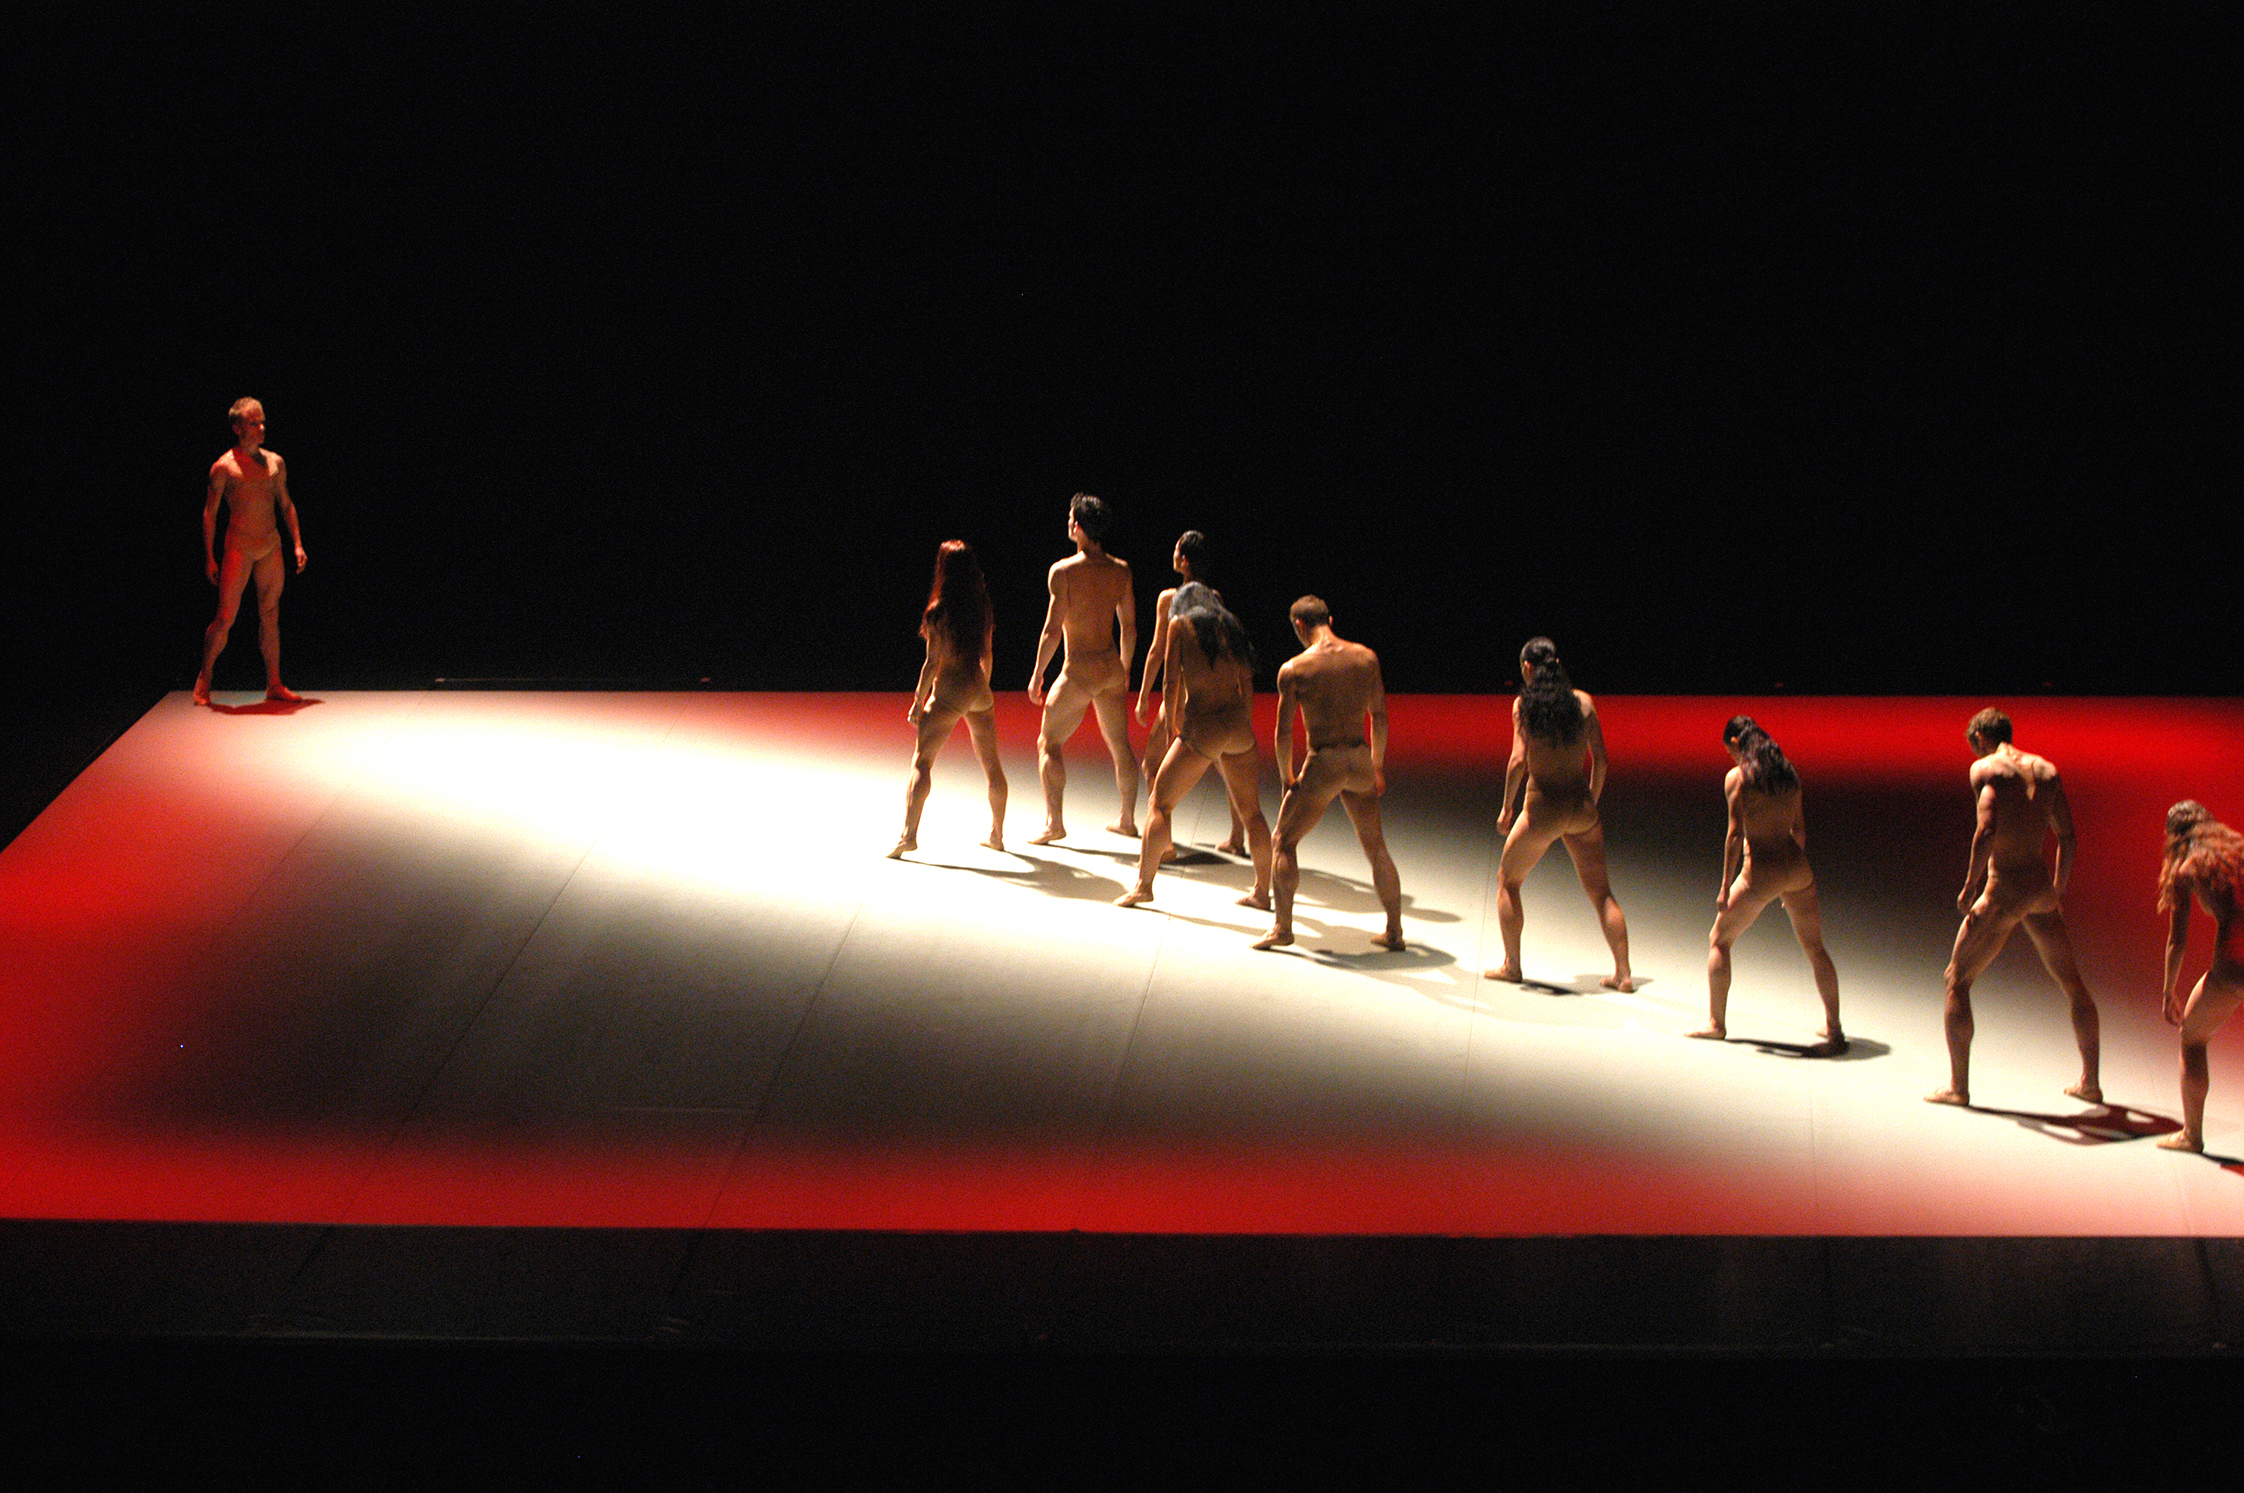 Thierry Malandain und seine Compagnie Malandain Ballet Biarritz mit der Choreografie Beethoven 7 am Theater Bonn.